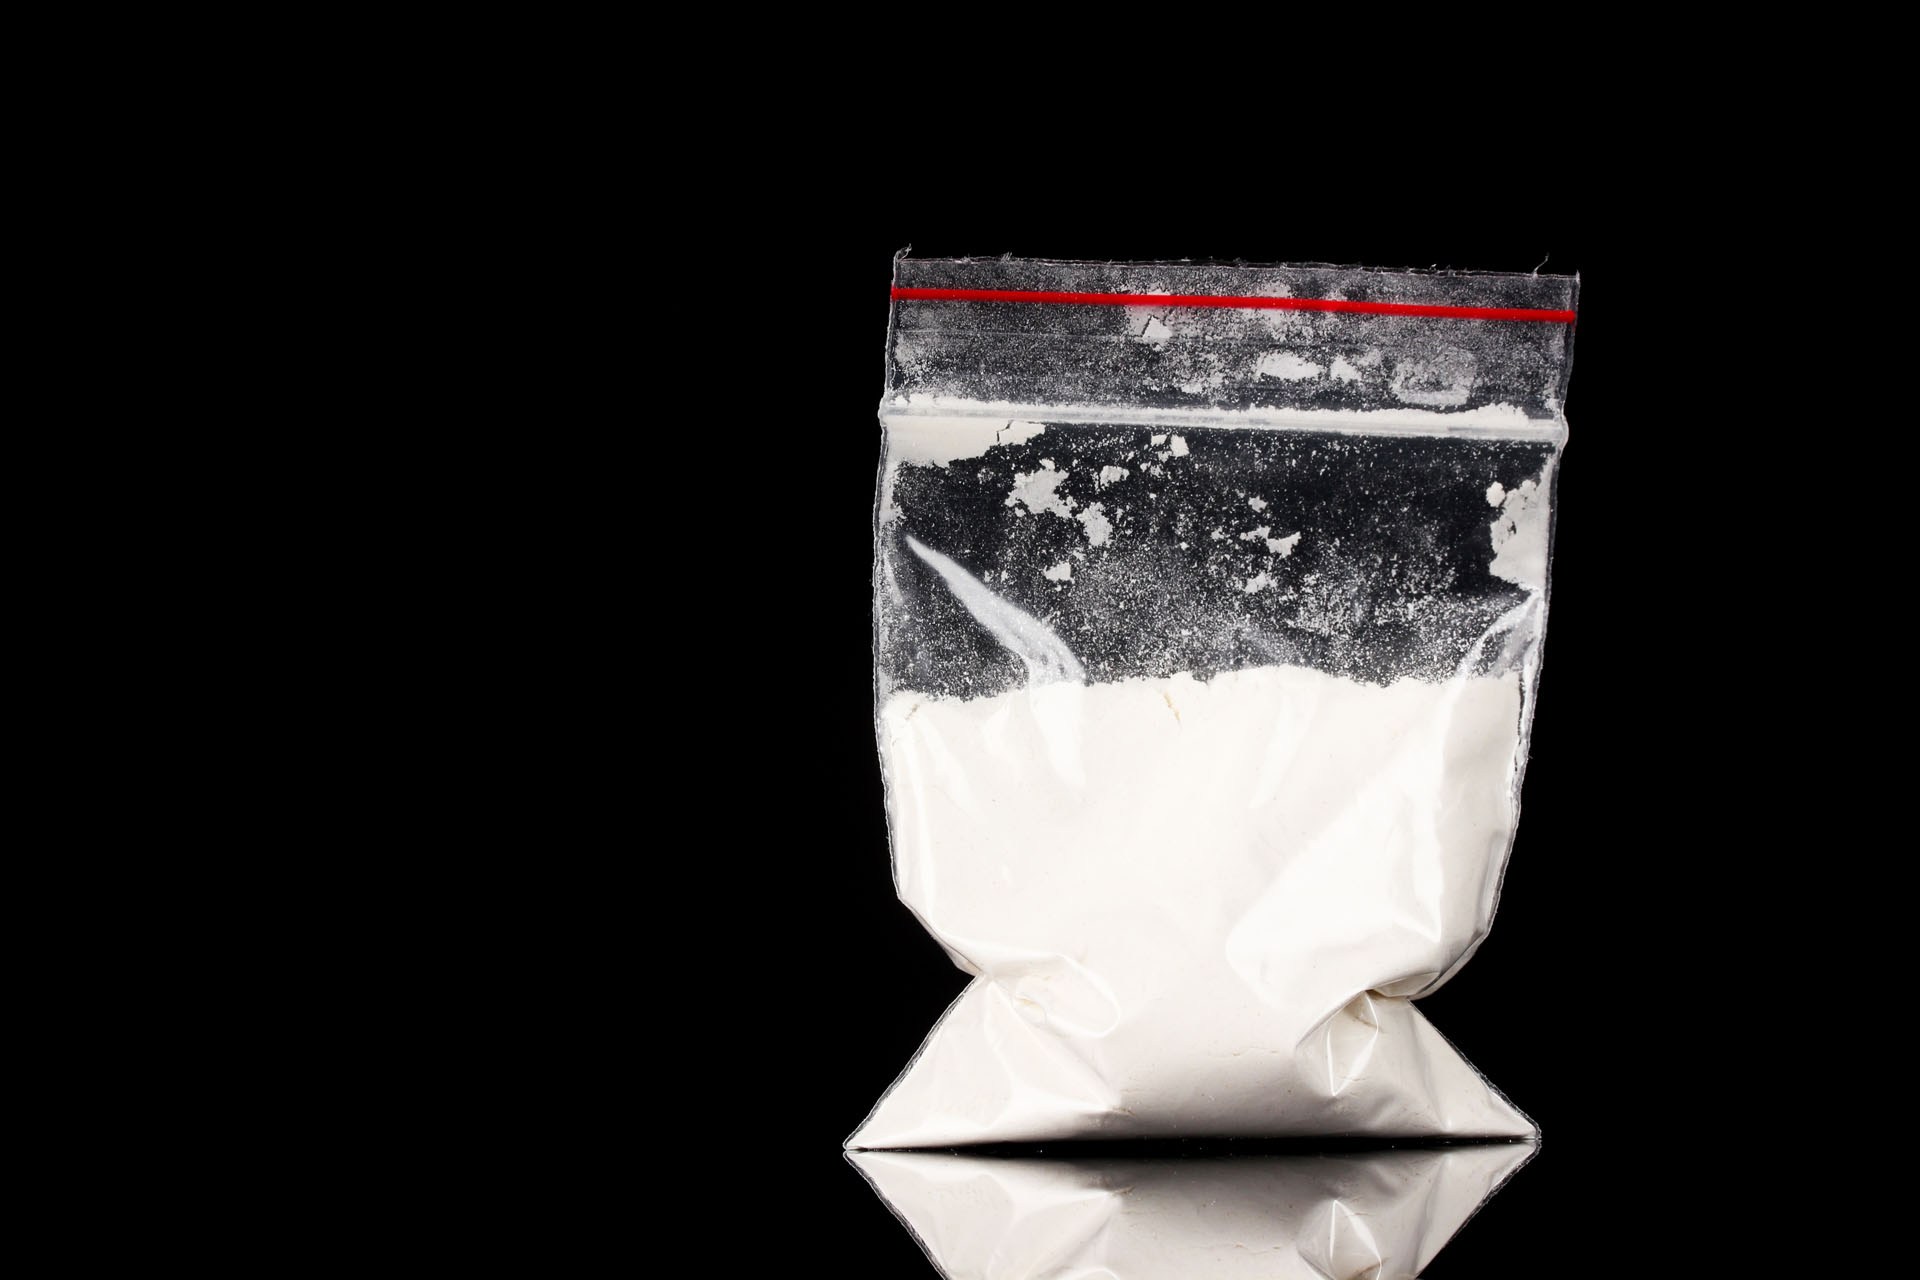 ​Saisie  "historique"      de cocaïne au large des Antilles, 2,25 tonnes estimées